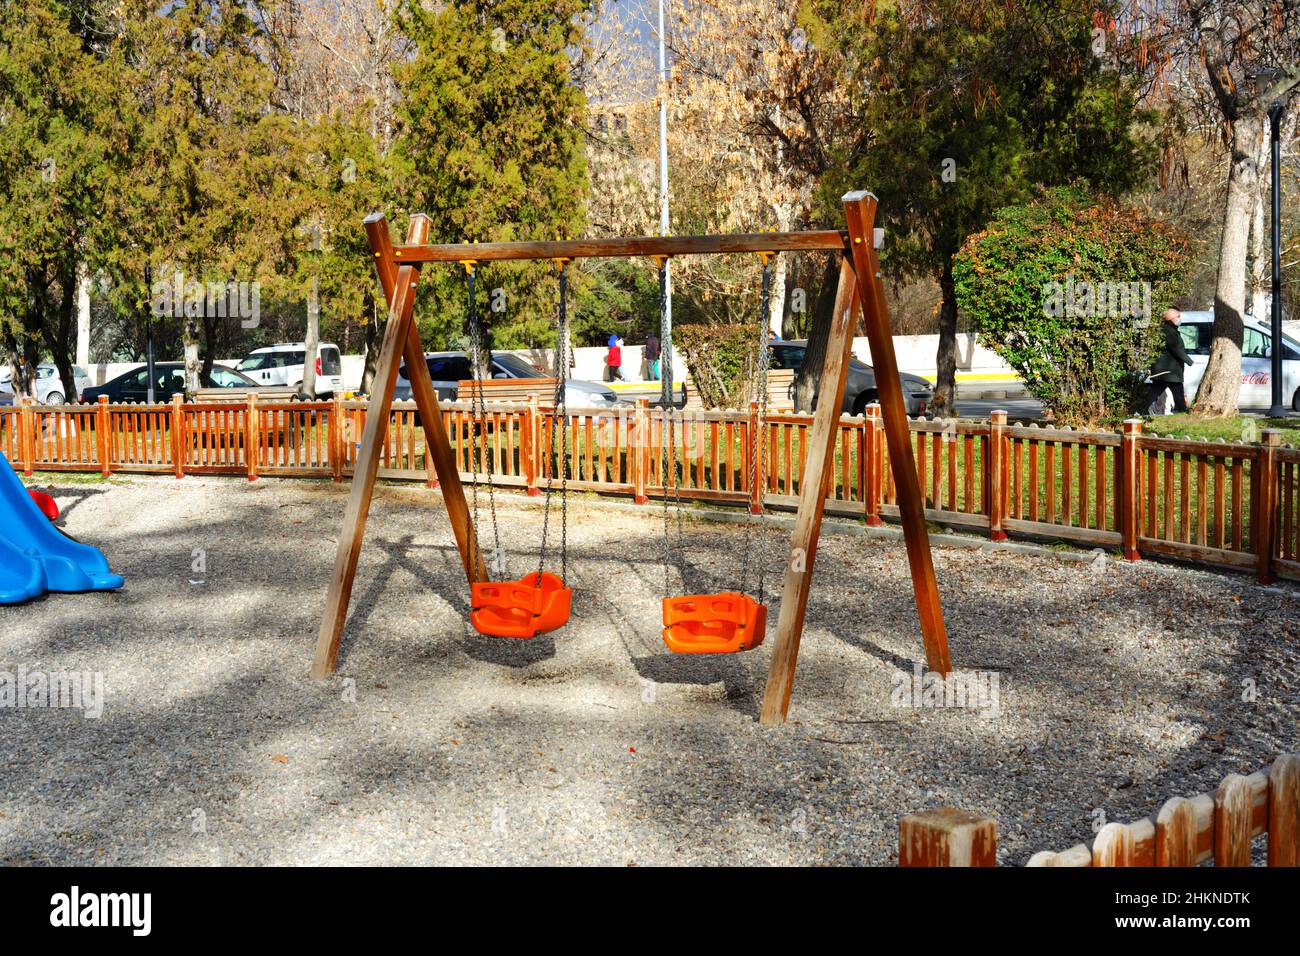 Parque infantil colorido de madera en la ciudad Foto de stock